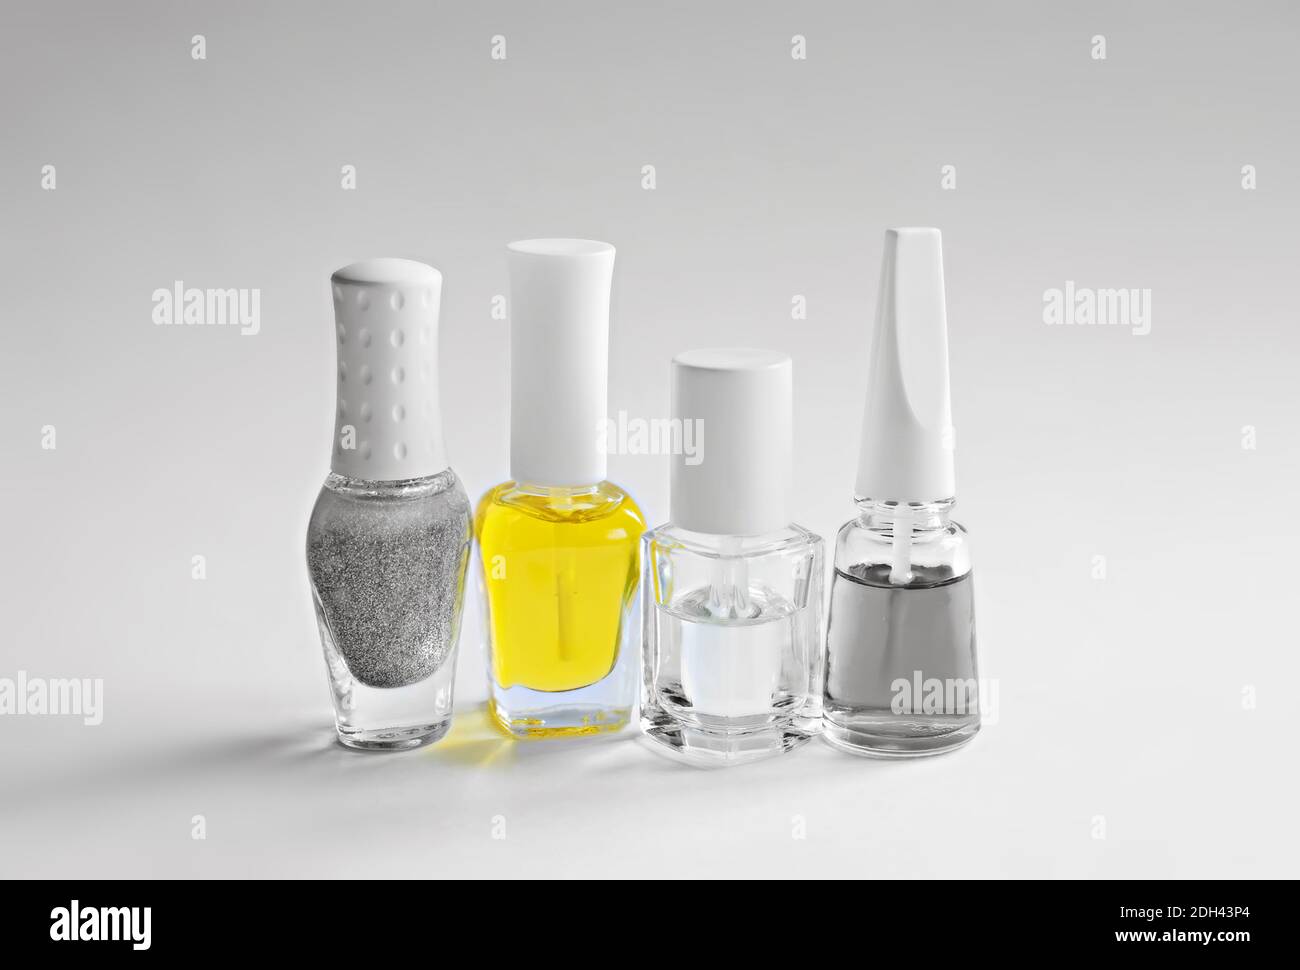 Una serie di prodotti per la cura delle unghie. Bottiglie con vernice per manicure grigia, trasparente e gialla. Colori dell'anno 2021. Foto Stock